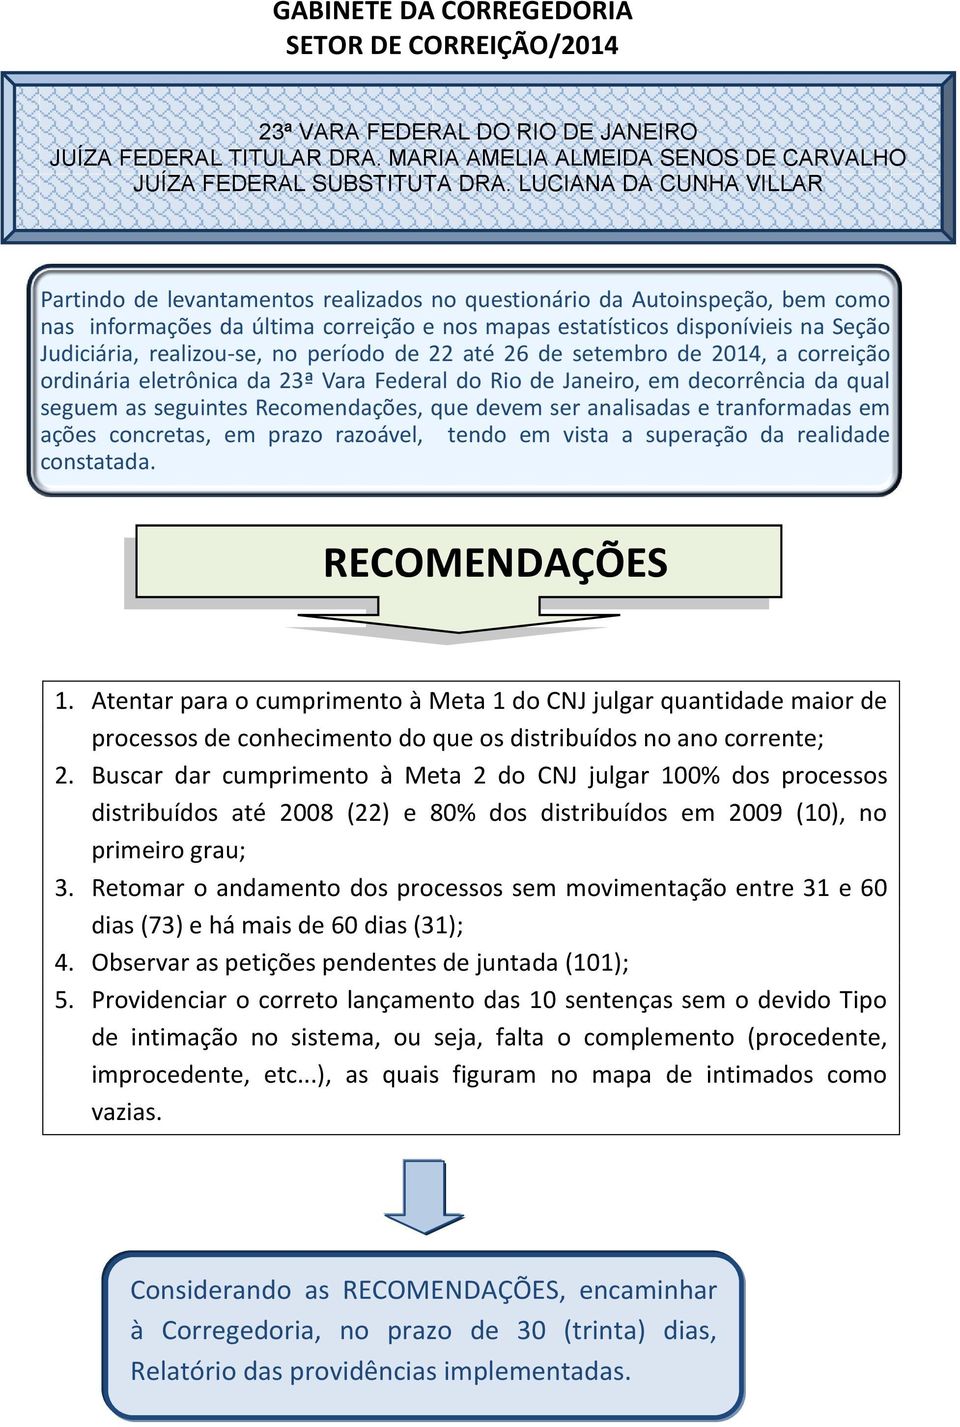 realizou-se, no período de 22 até 26 de setembro de 2014, a correição ordinária eletrônica da 23ª Vara Federal do Rio de Janeiro, em decorrência da qual seguem as seguintes Recomendações, que devem